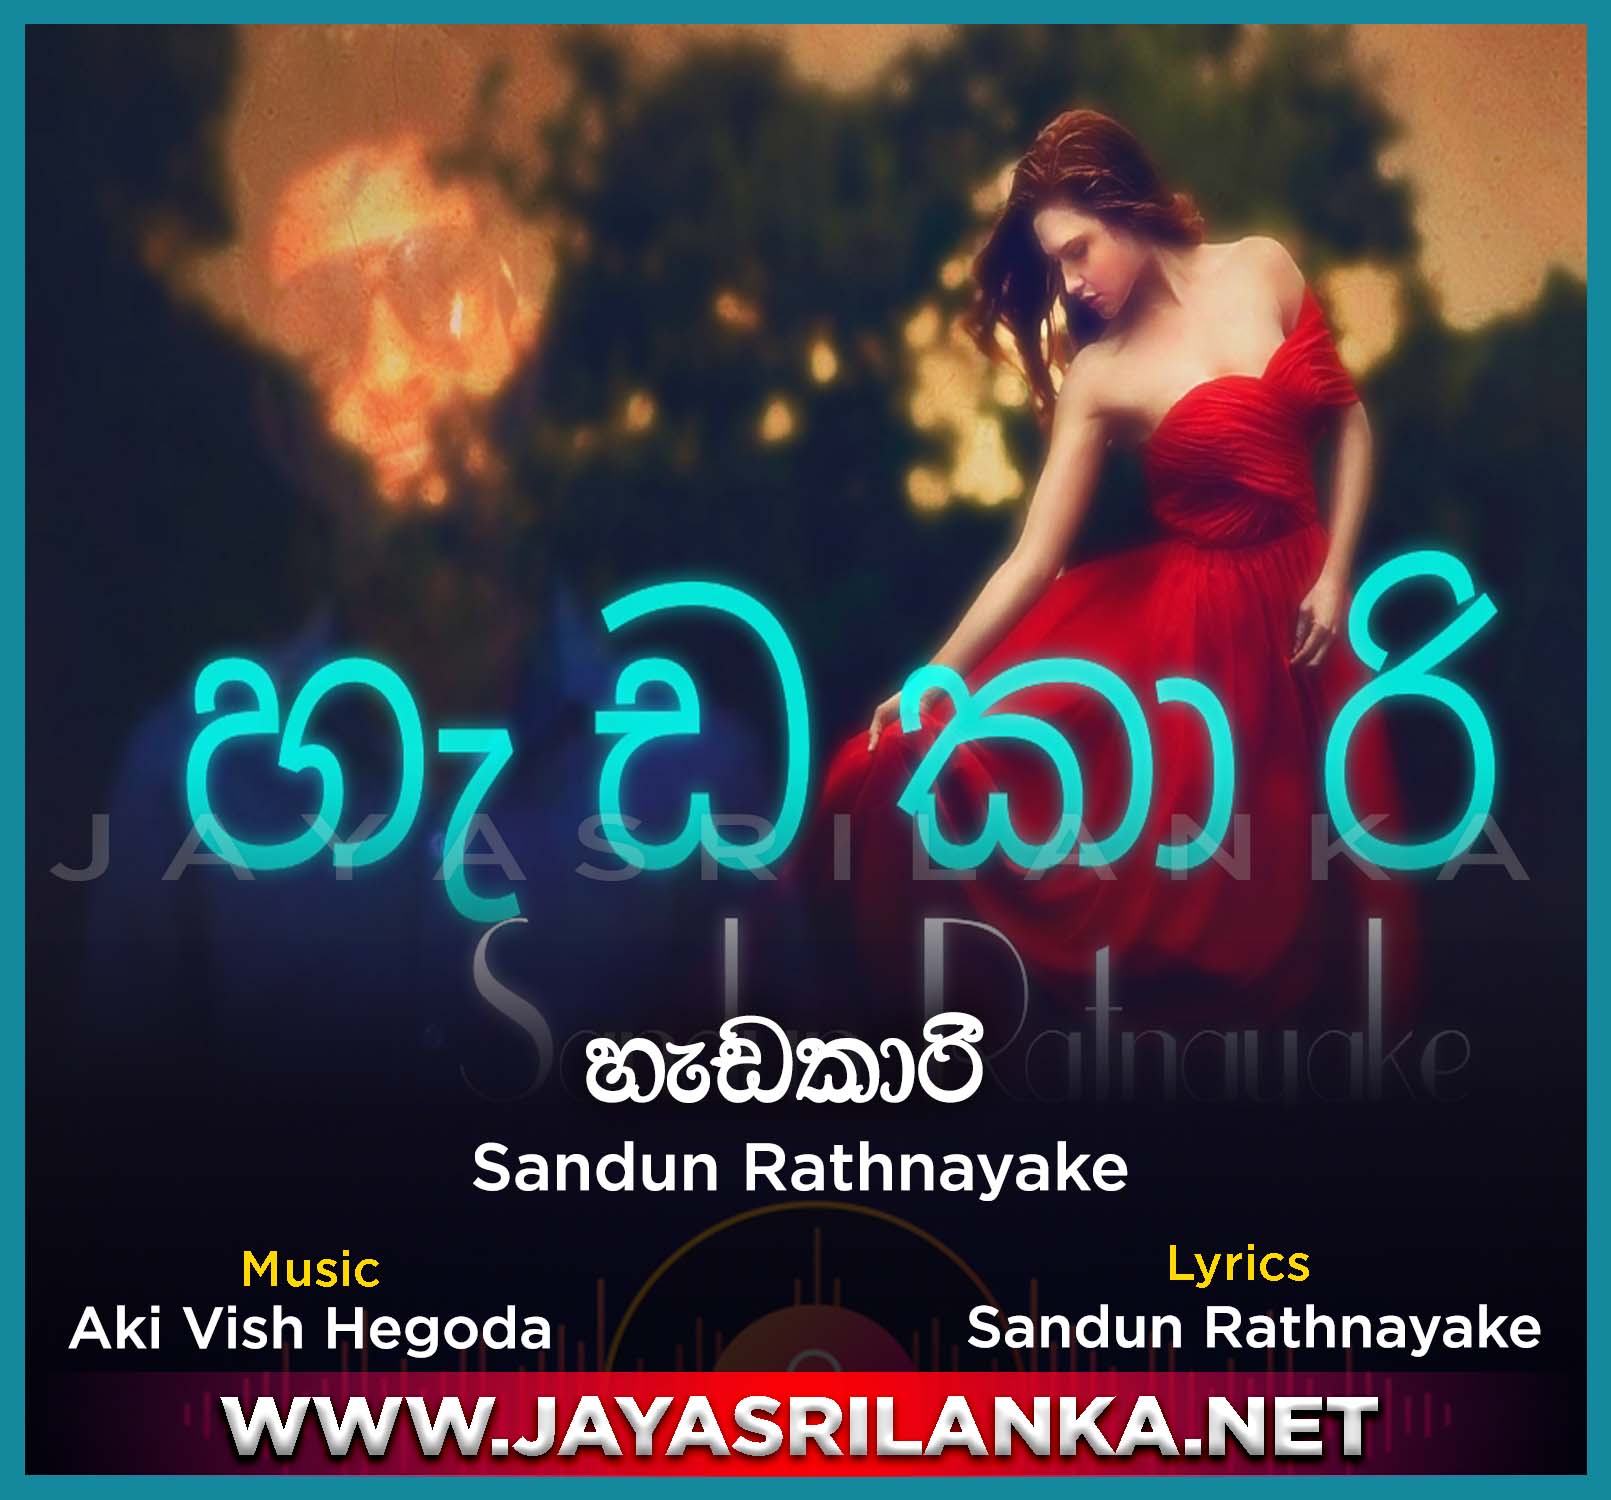 Hadakarai (My Heart Will Go On Sinhala Version)